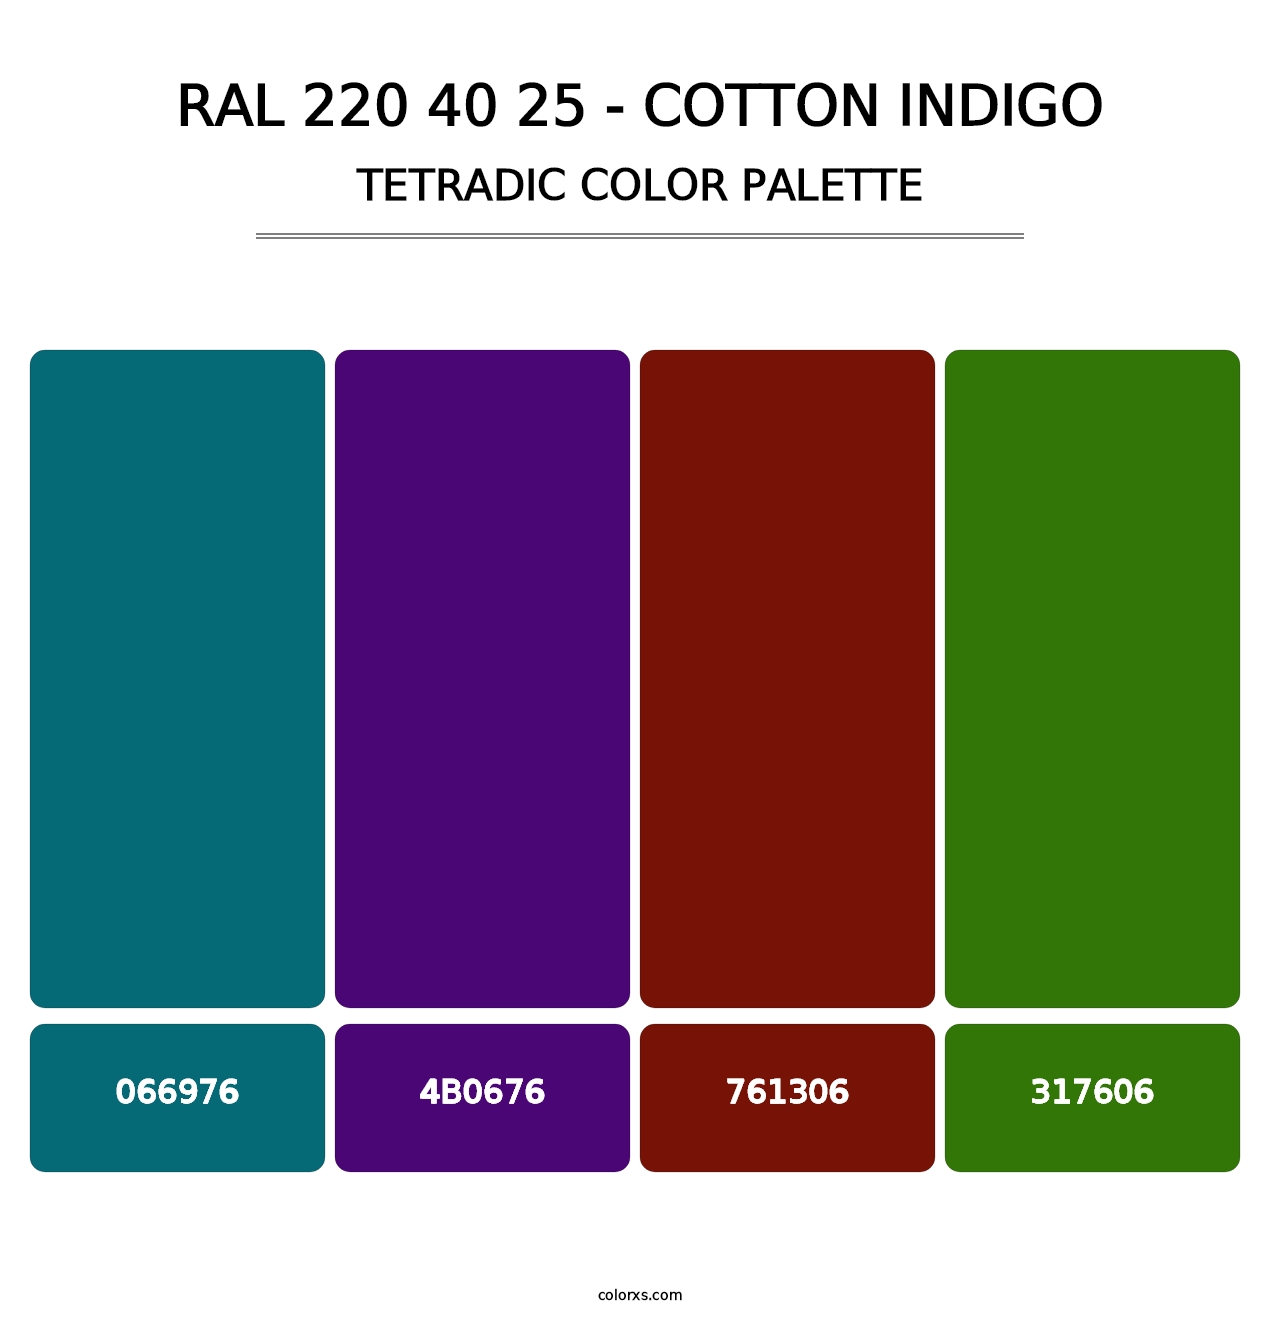 RAL 220 40 25 - Cotton Indigo - Tetradic Color Palette